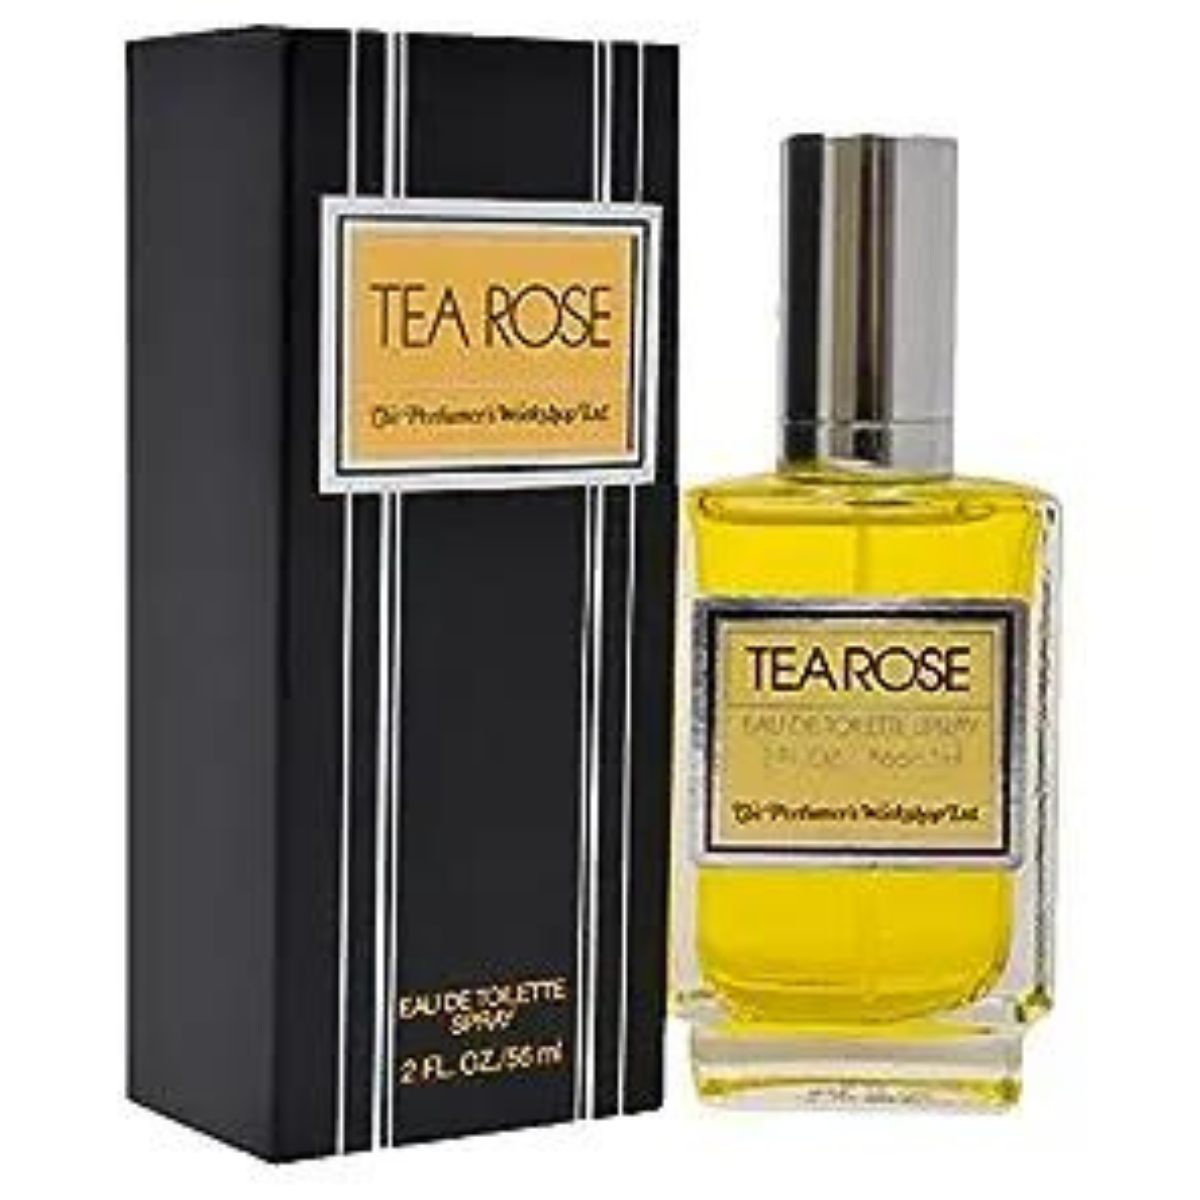 The Perfumer's Workshop Tea Rose 56 ml for men & women perfume-2